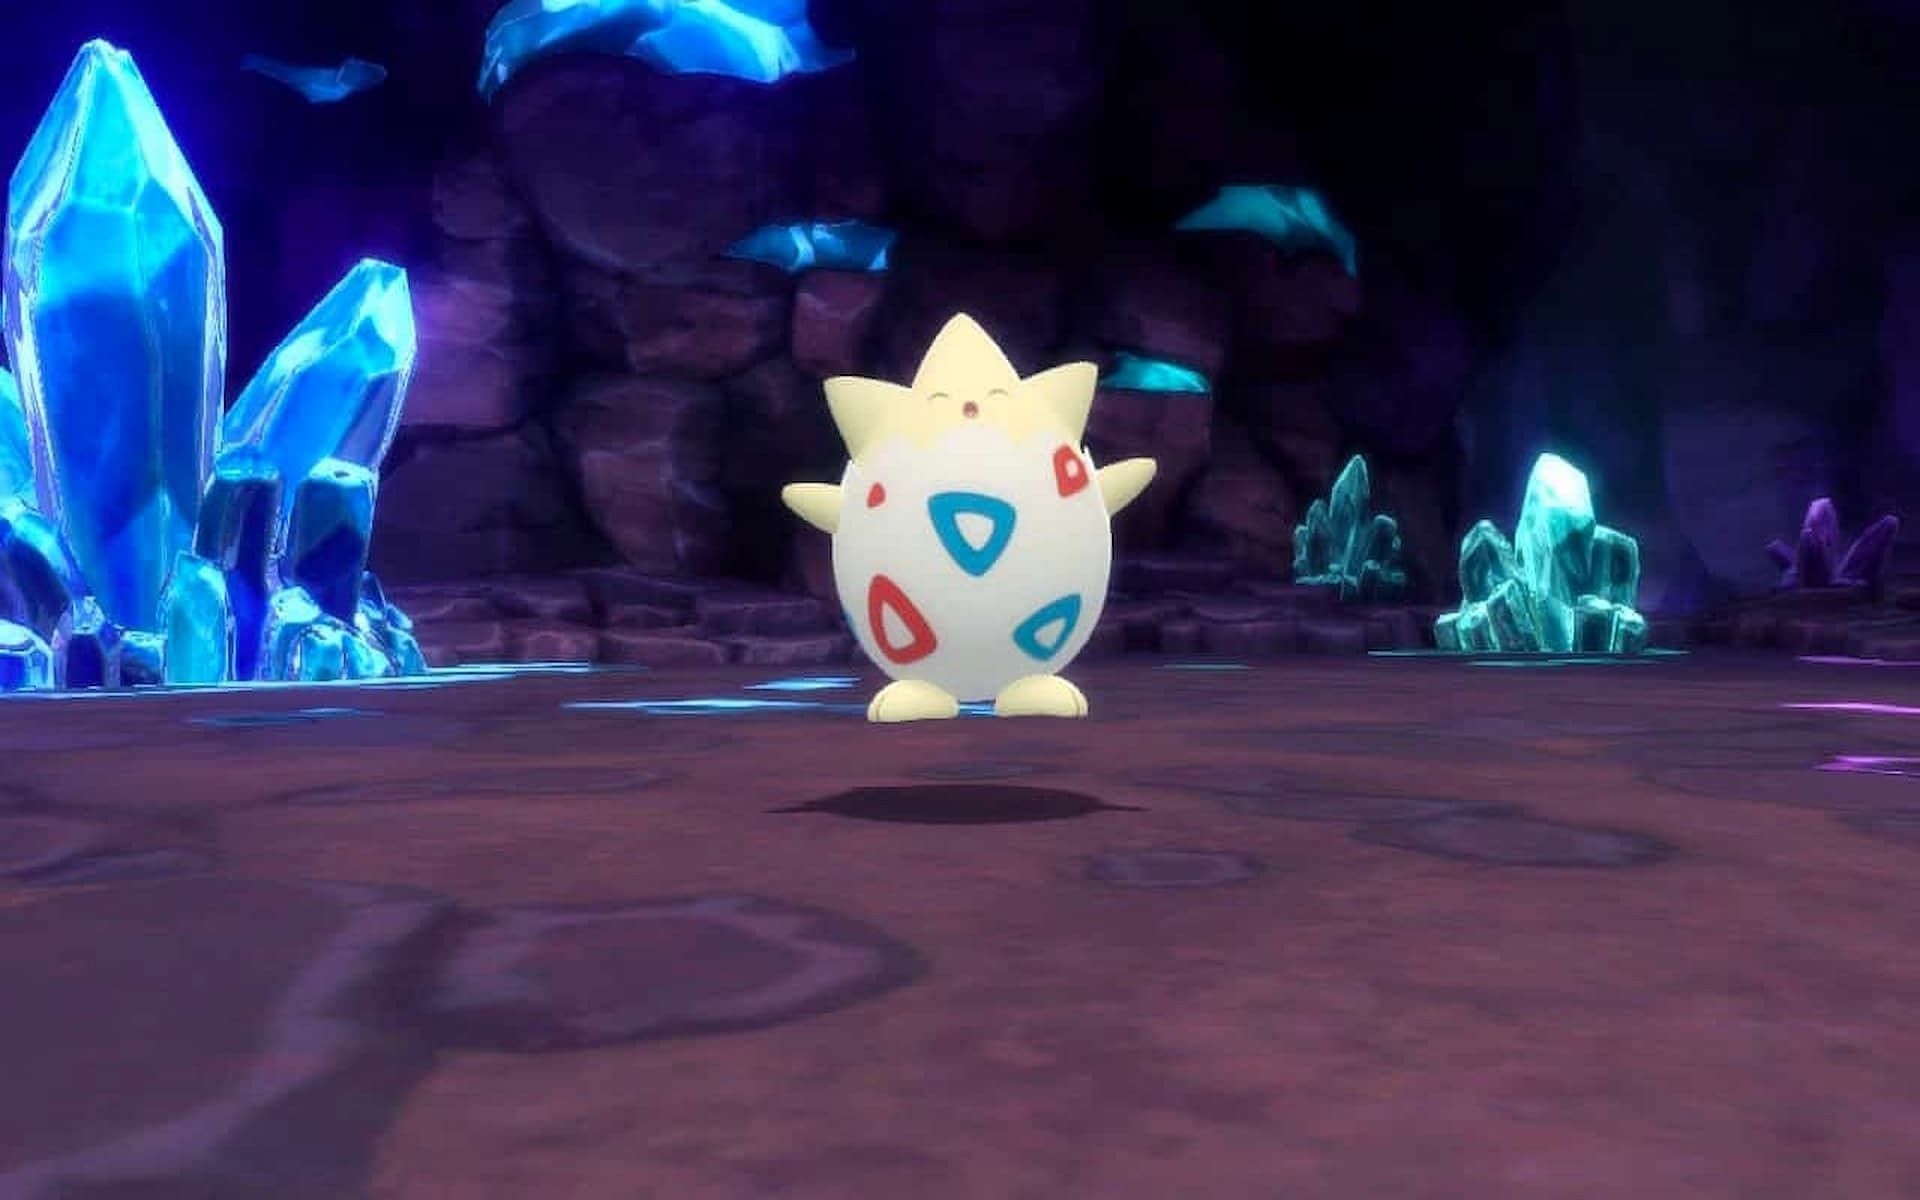 A wild Togepi in Pokemon Brilliant Diamond and Shining Pearl (Image via ILCA)